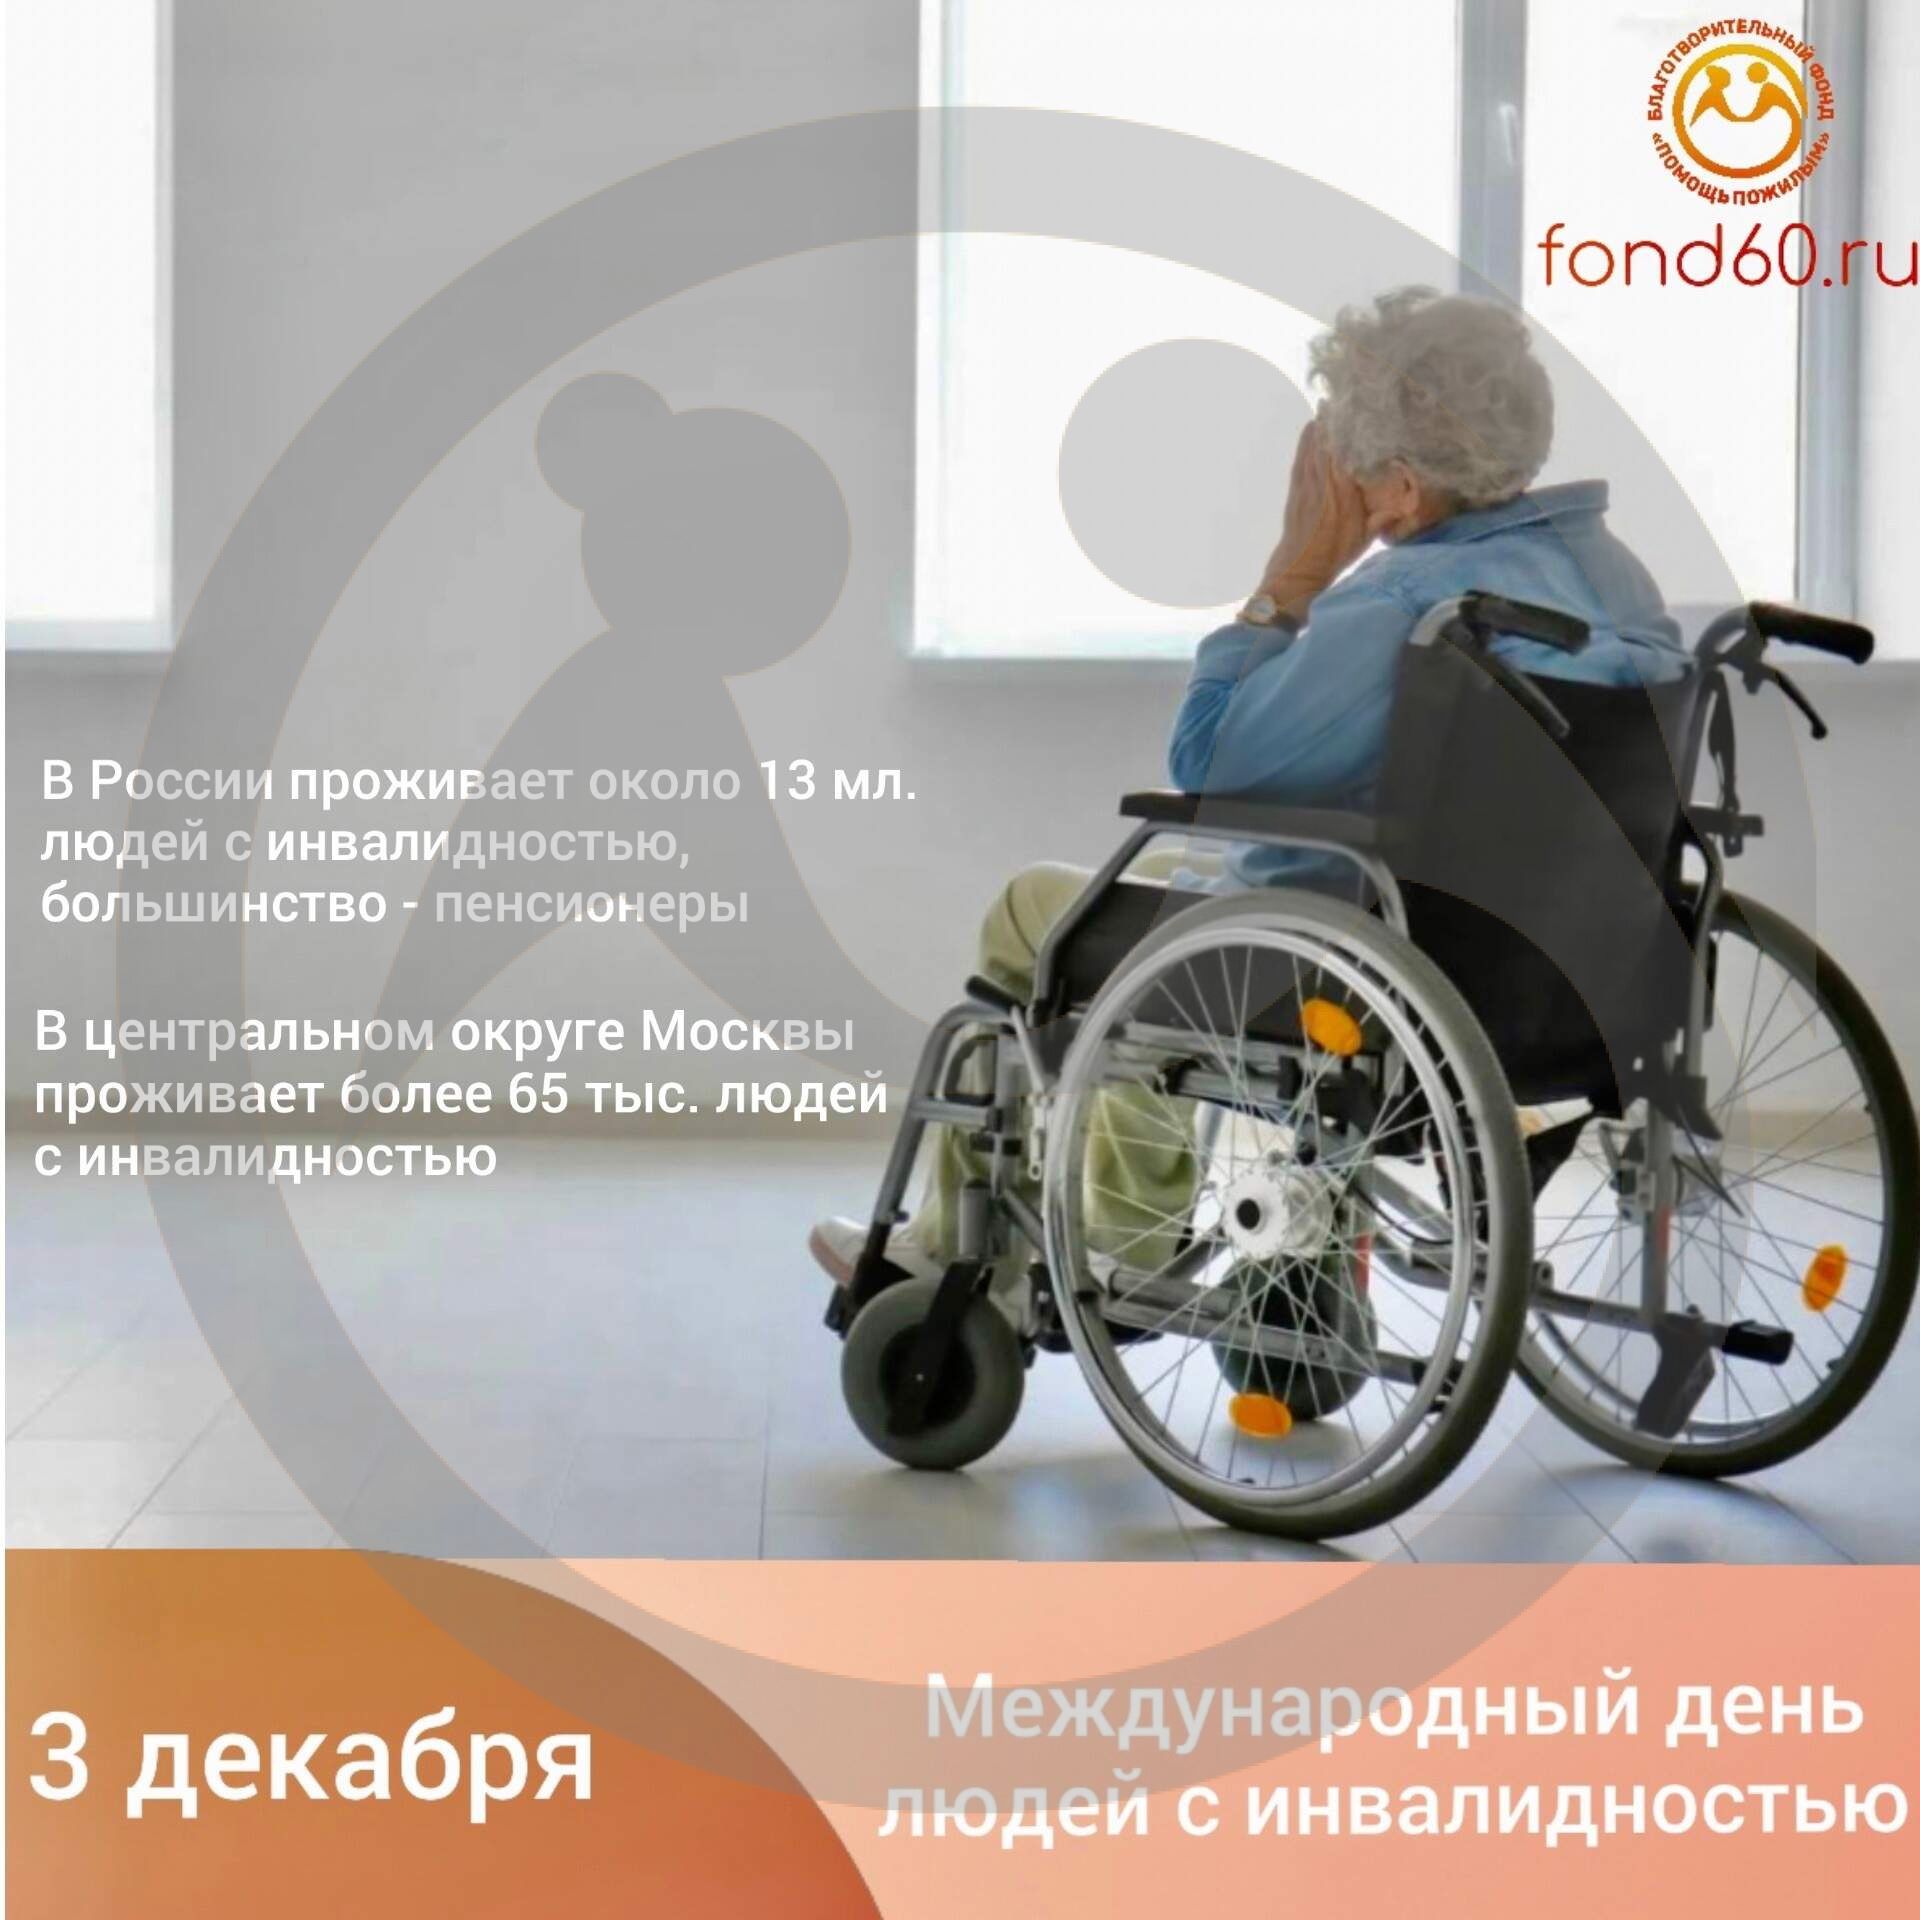 Международный день людей с инвалидностью.